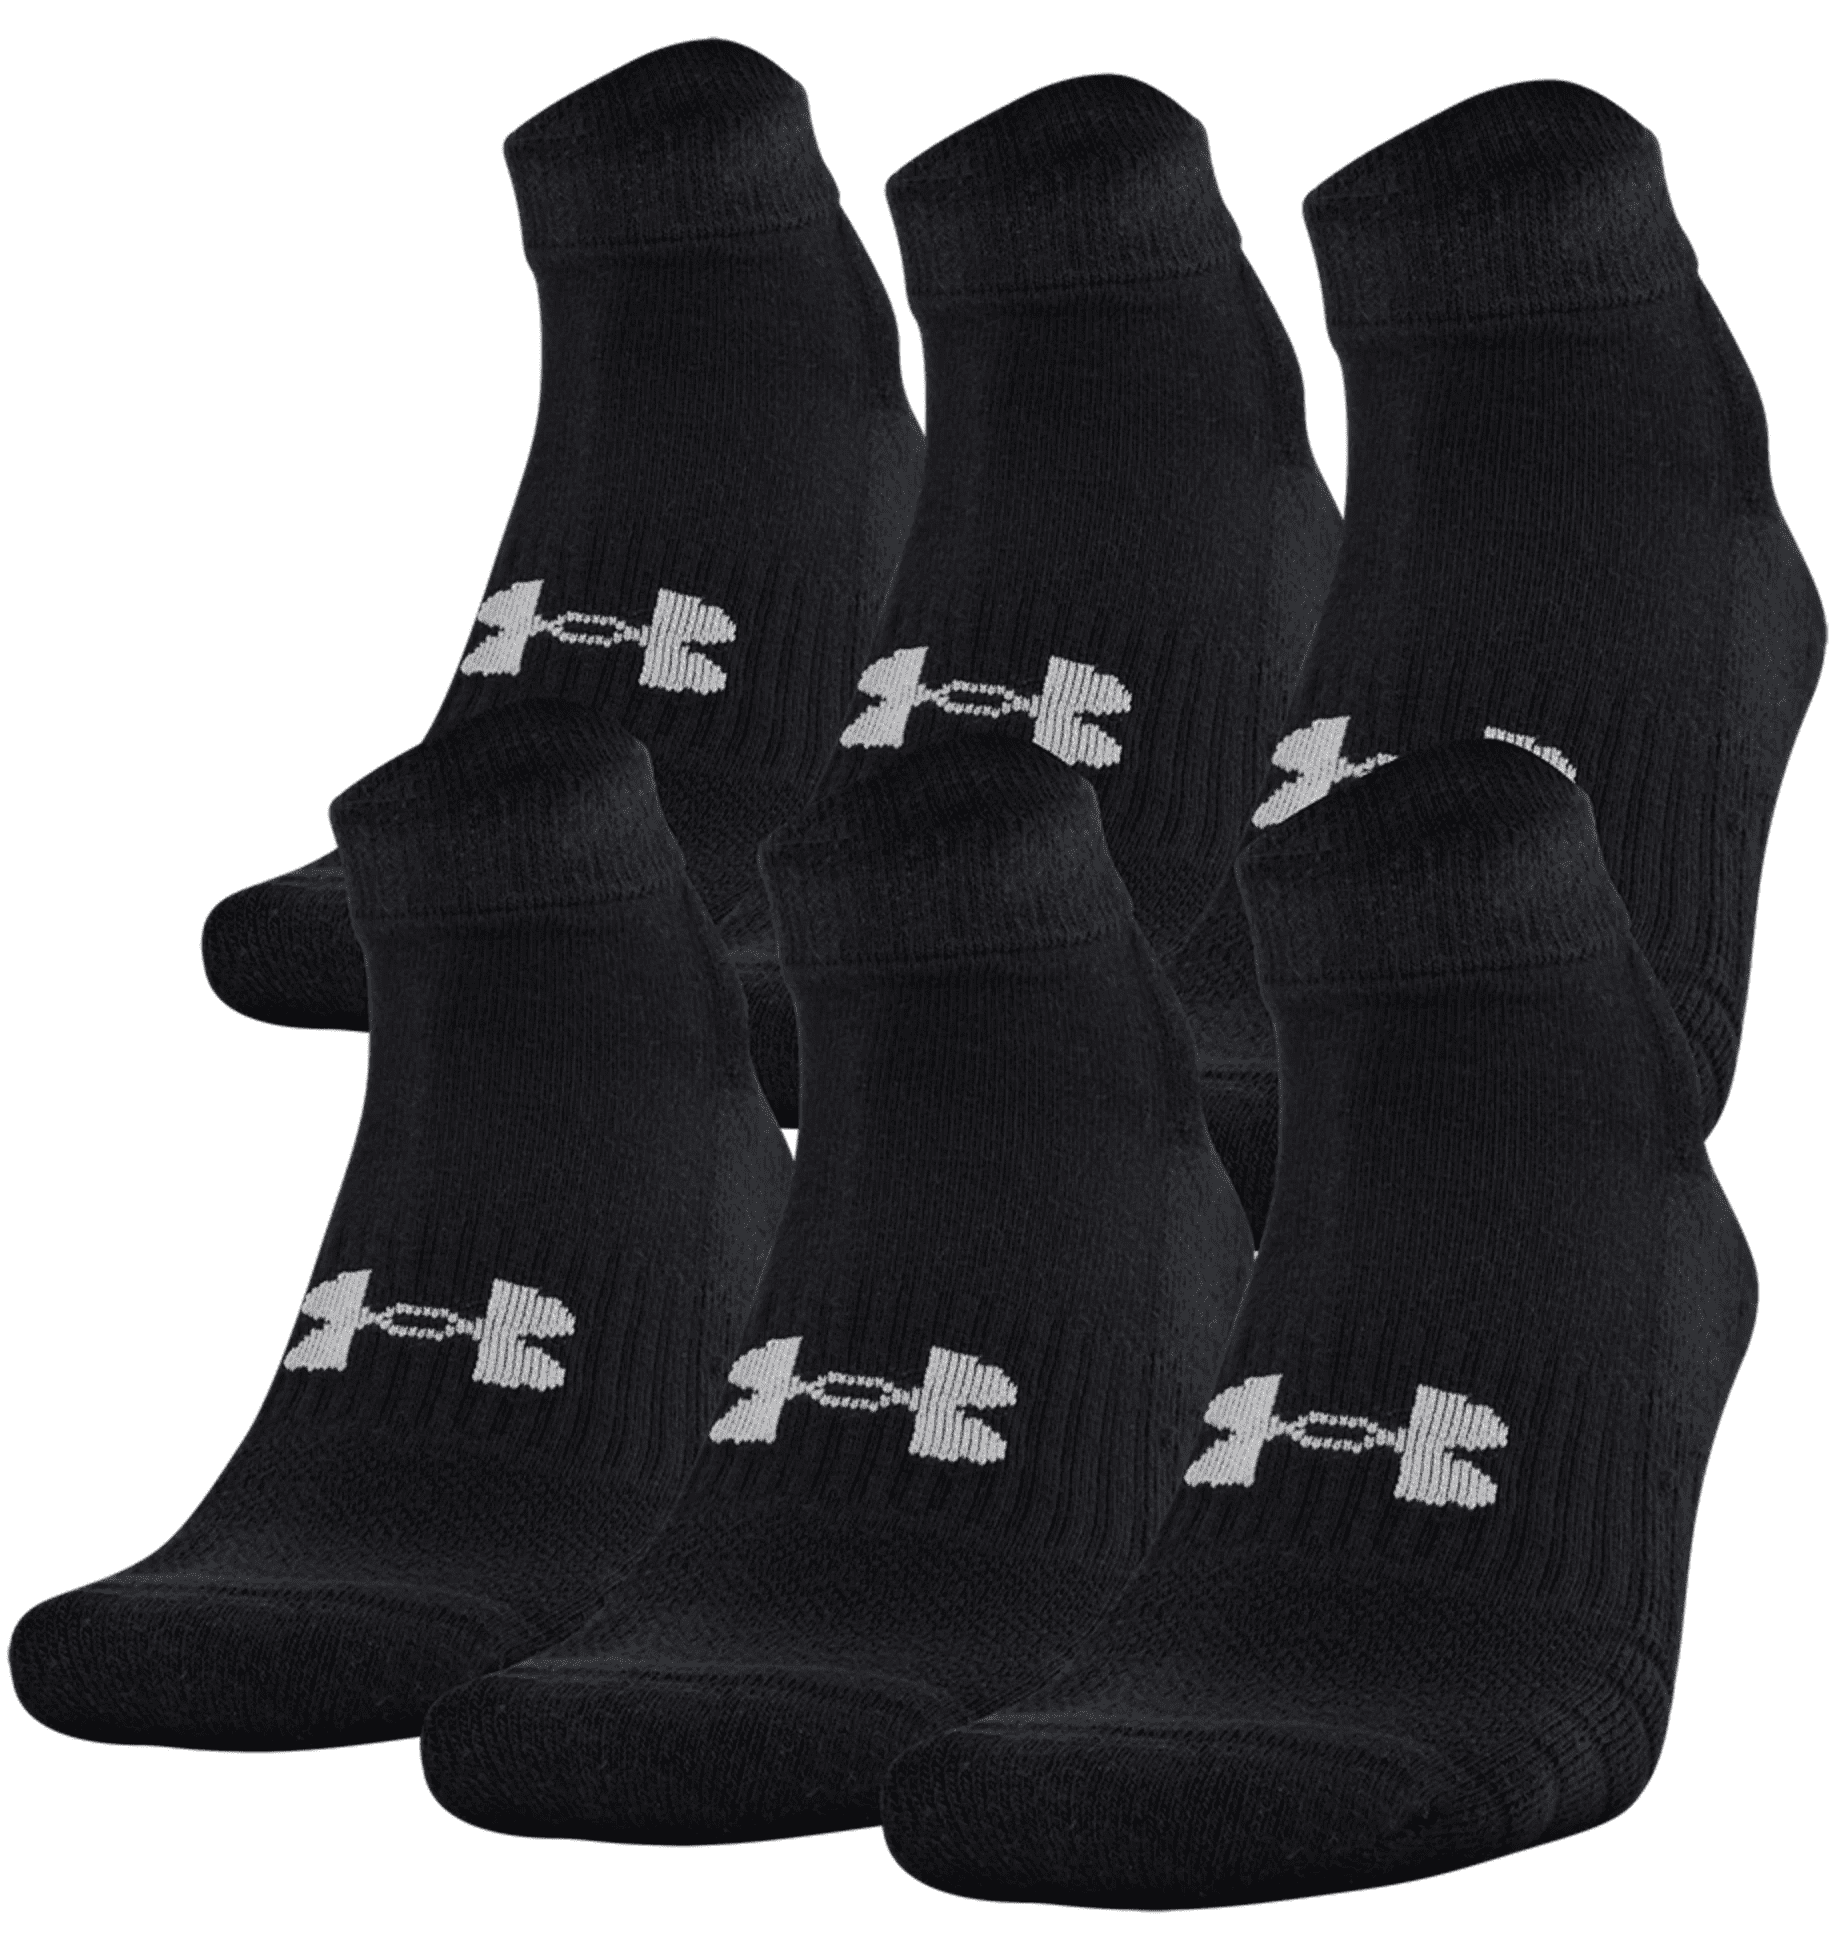 Under Armour Unisex UA Training Cotton Low Cut 6-Pack Socks 1346791 - Black, L